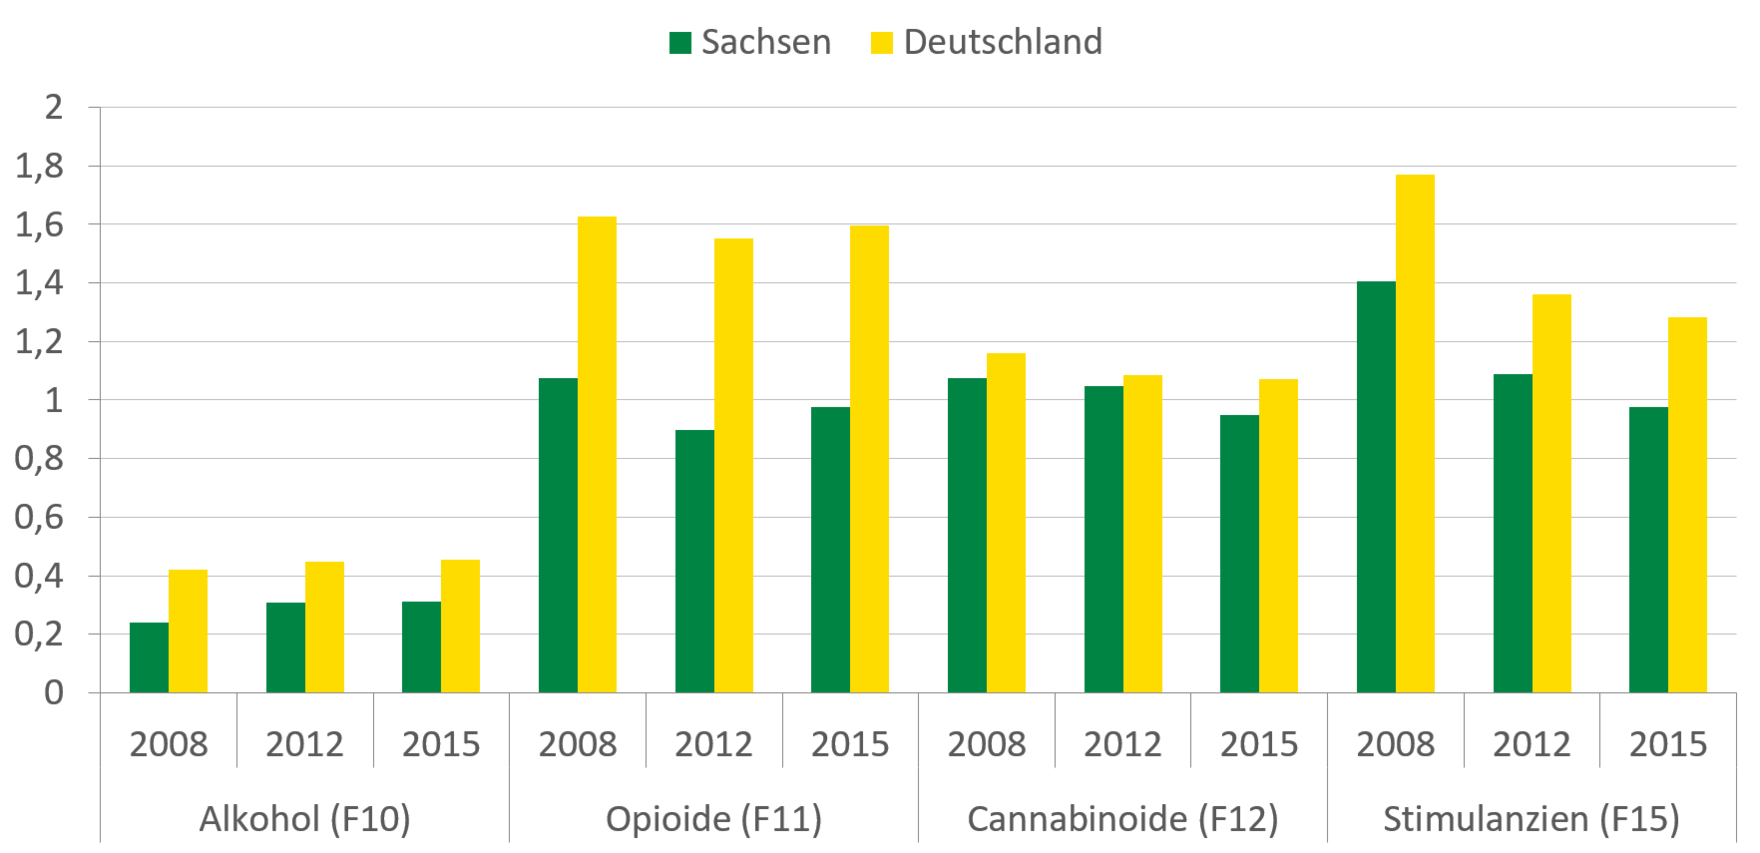 In Deutschland ist der Indexwert der Zusatzdiagnosen für Alkohol und Opioide relativ stabil geblieben, während er für Cannabinoide leicht und für Stimulanzien stärker gefallen ist. Eine ähnliche Entwicklung konnte auch in Sachsen beobachtet werden, die Werte sind aber allgemein niedriger als für Deutschland.